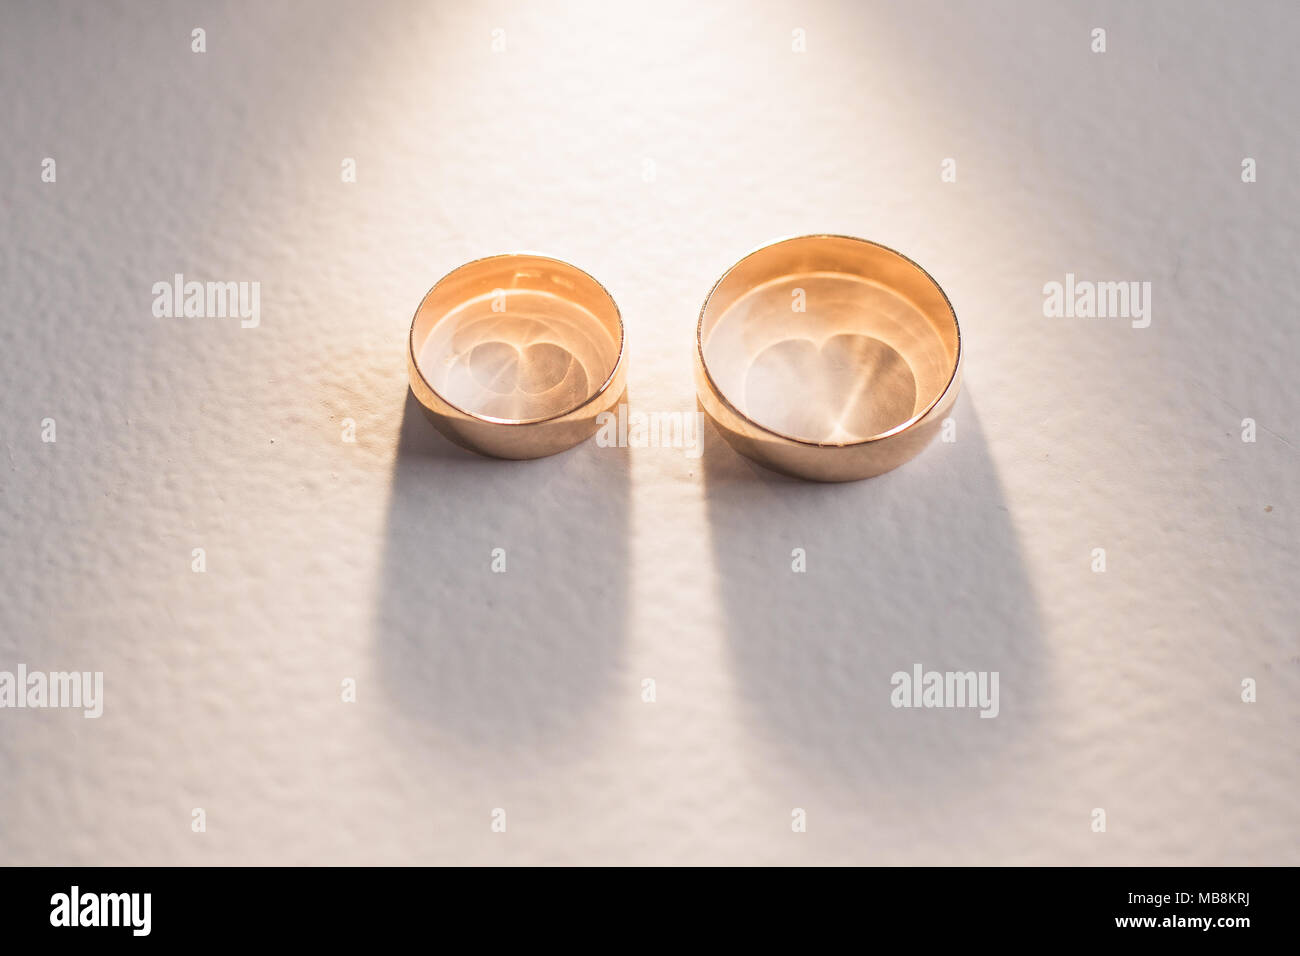 Detailansicht von zwei golden glänzenden Ringe. Horizontale clor Fotografie. Stockfoto